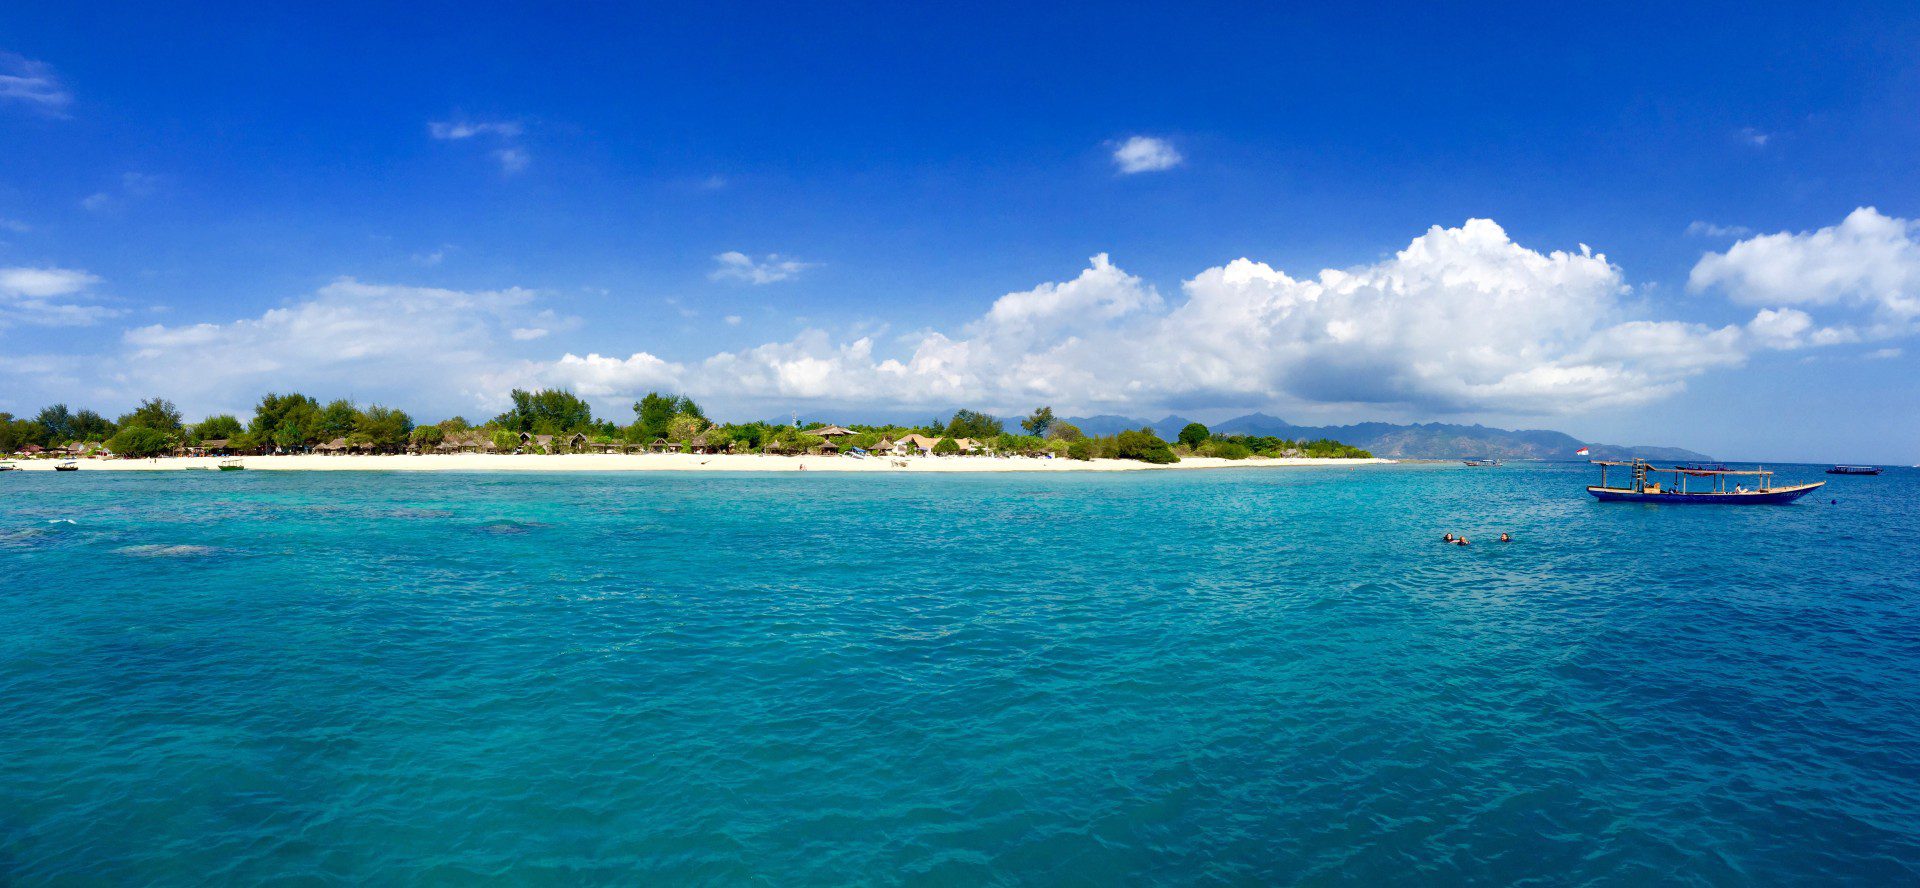 Die Gili Inseln sind ein Paradies für Taucher und Weltreisende: Glasklares Wasser und feinsandige Strände machen die kleinen Inseln zu einem tropischen Paradies. Foto: Sascha Tegtmeyer